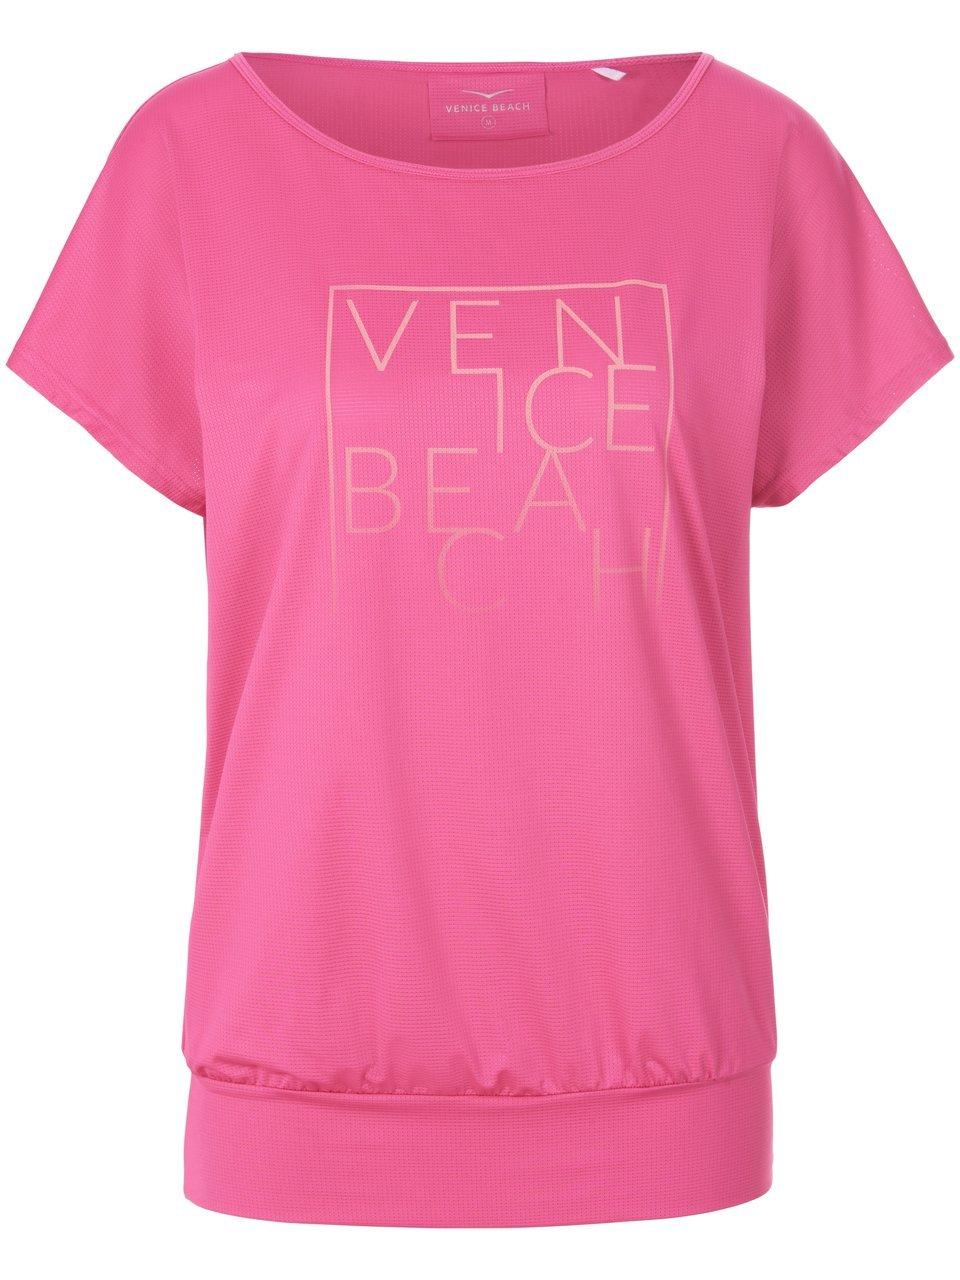 Shirt Van Venice Beach pink